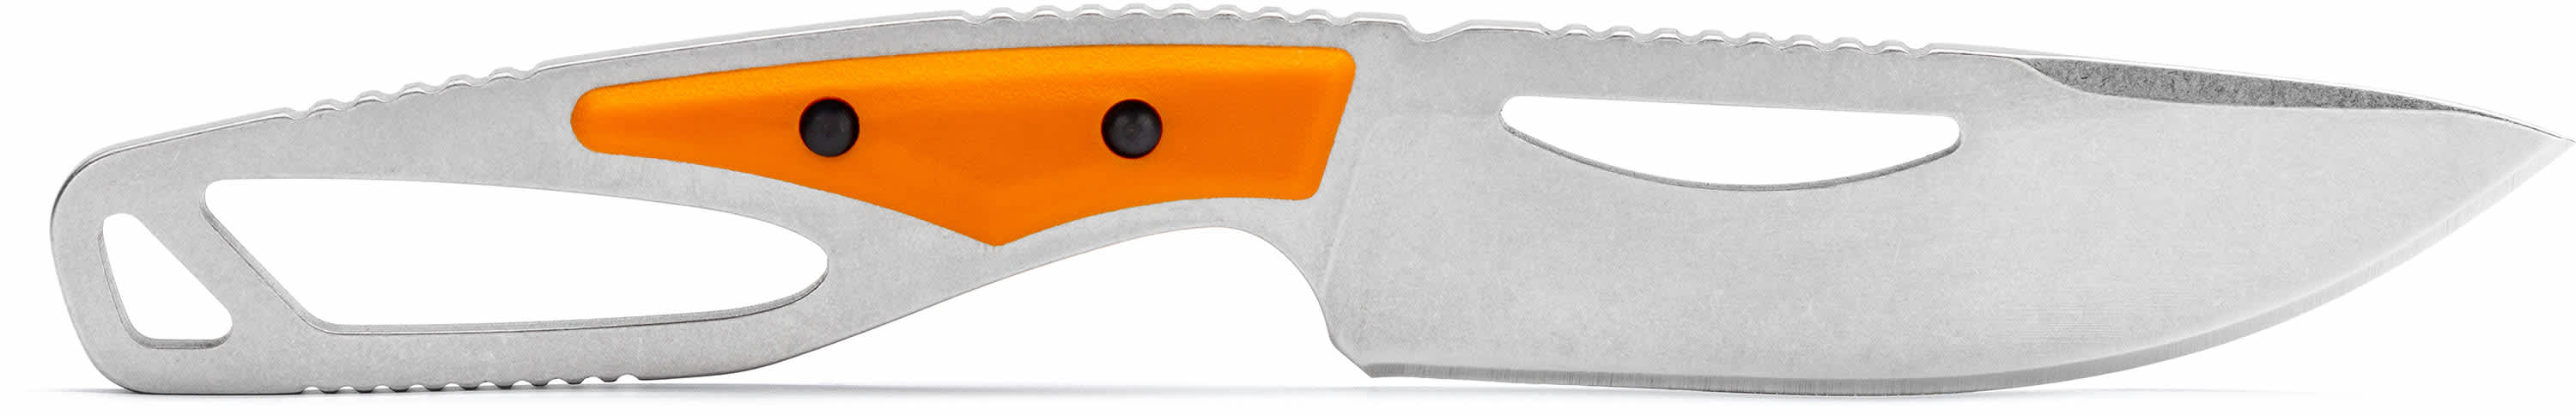 Buck® 631 Paklite 2.0 Field Fixed Blade Knife